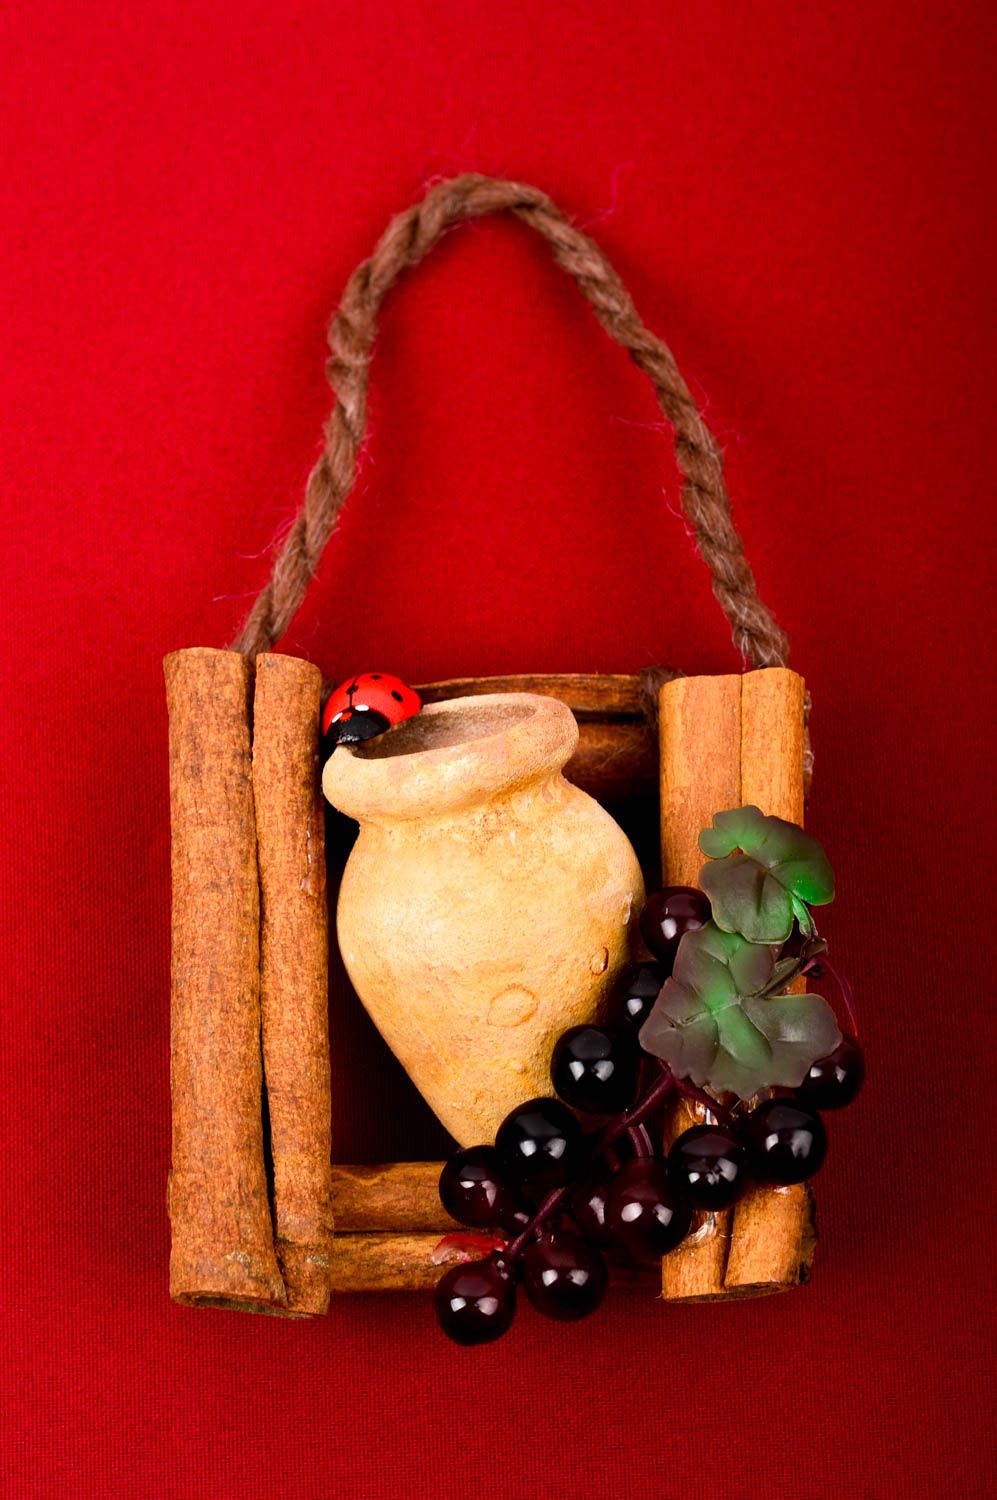 Декор на стену хэнд мейд глиняный сувенир очень необычный декор для кухни фото 1